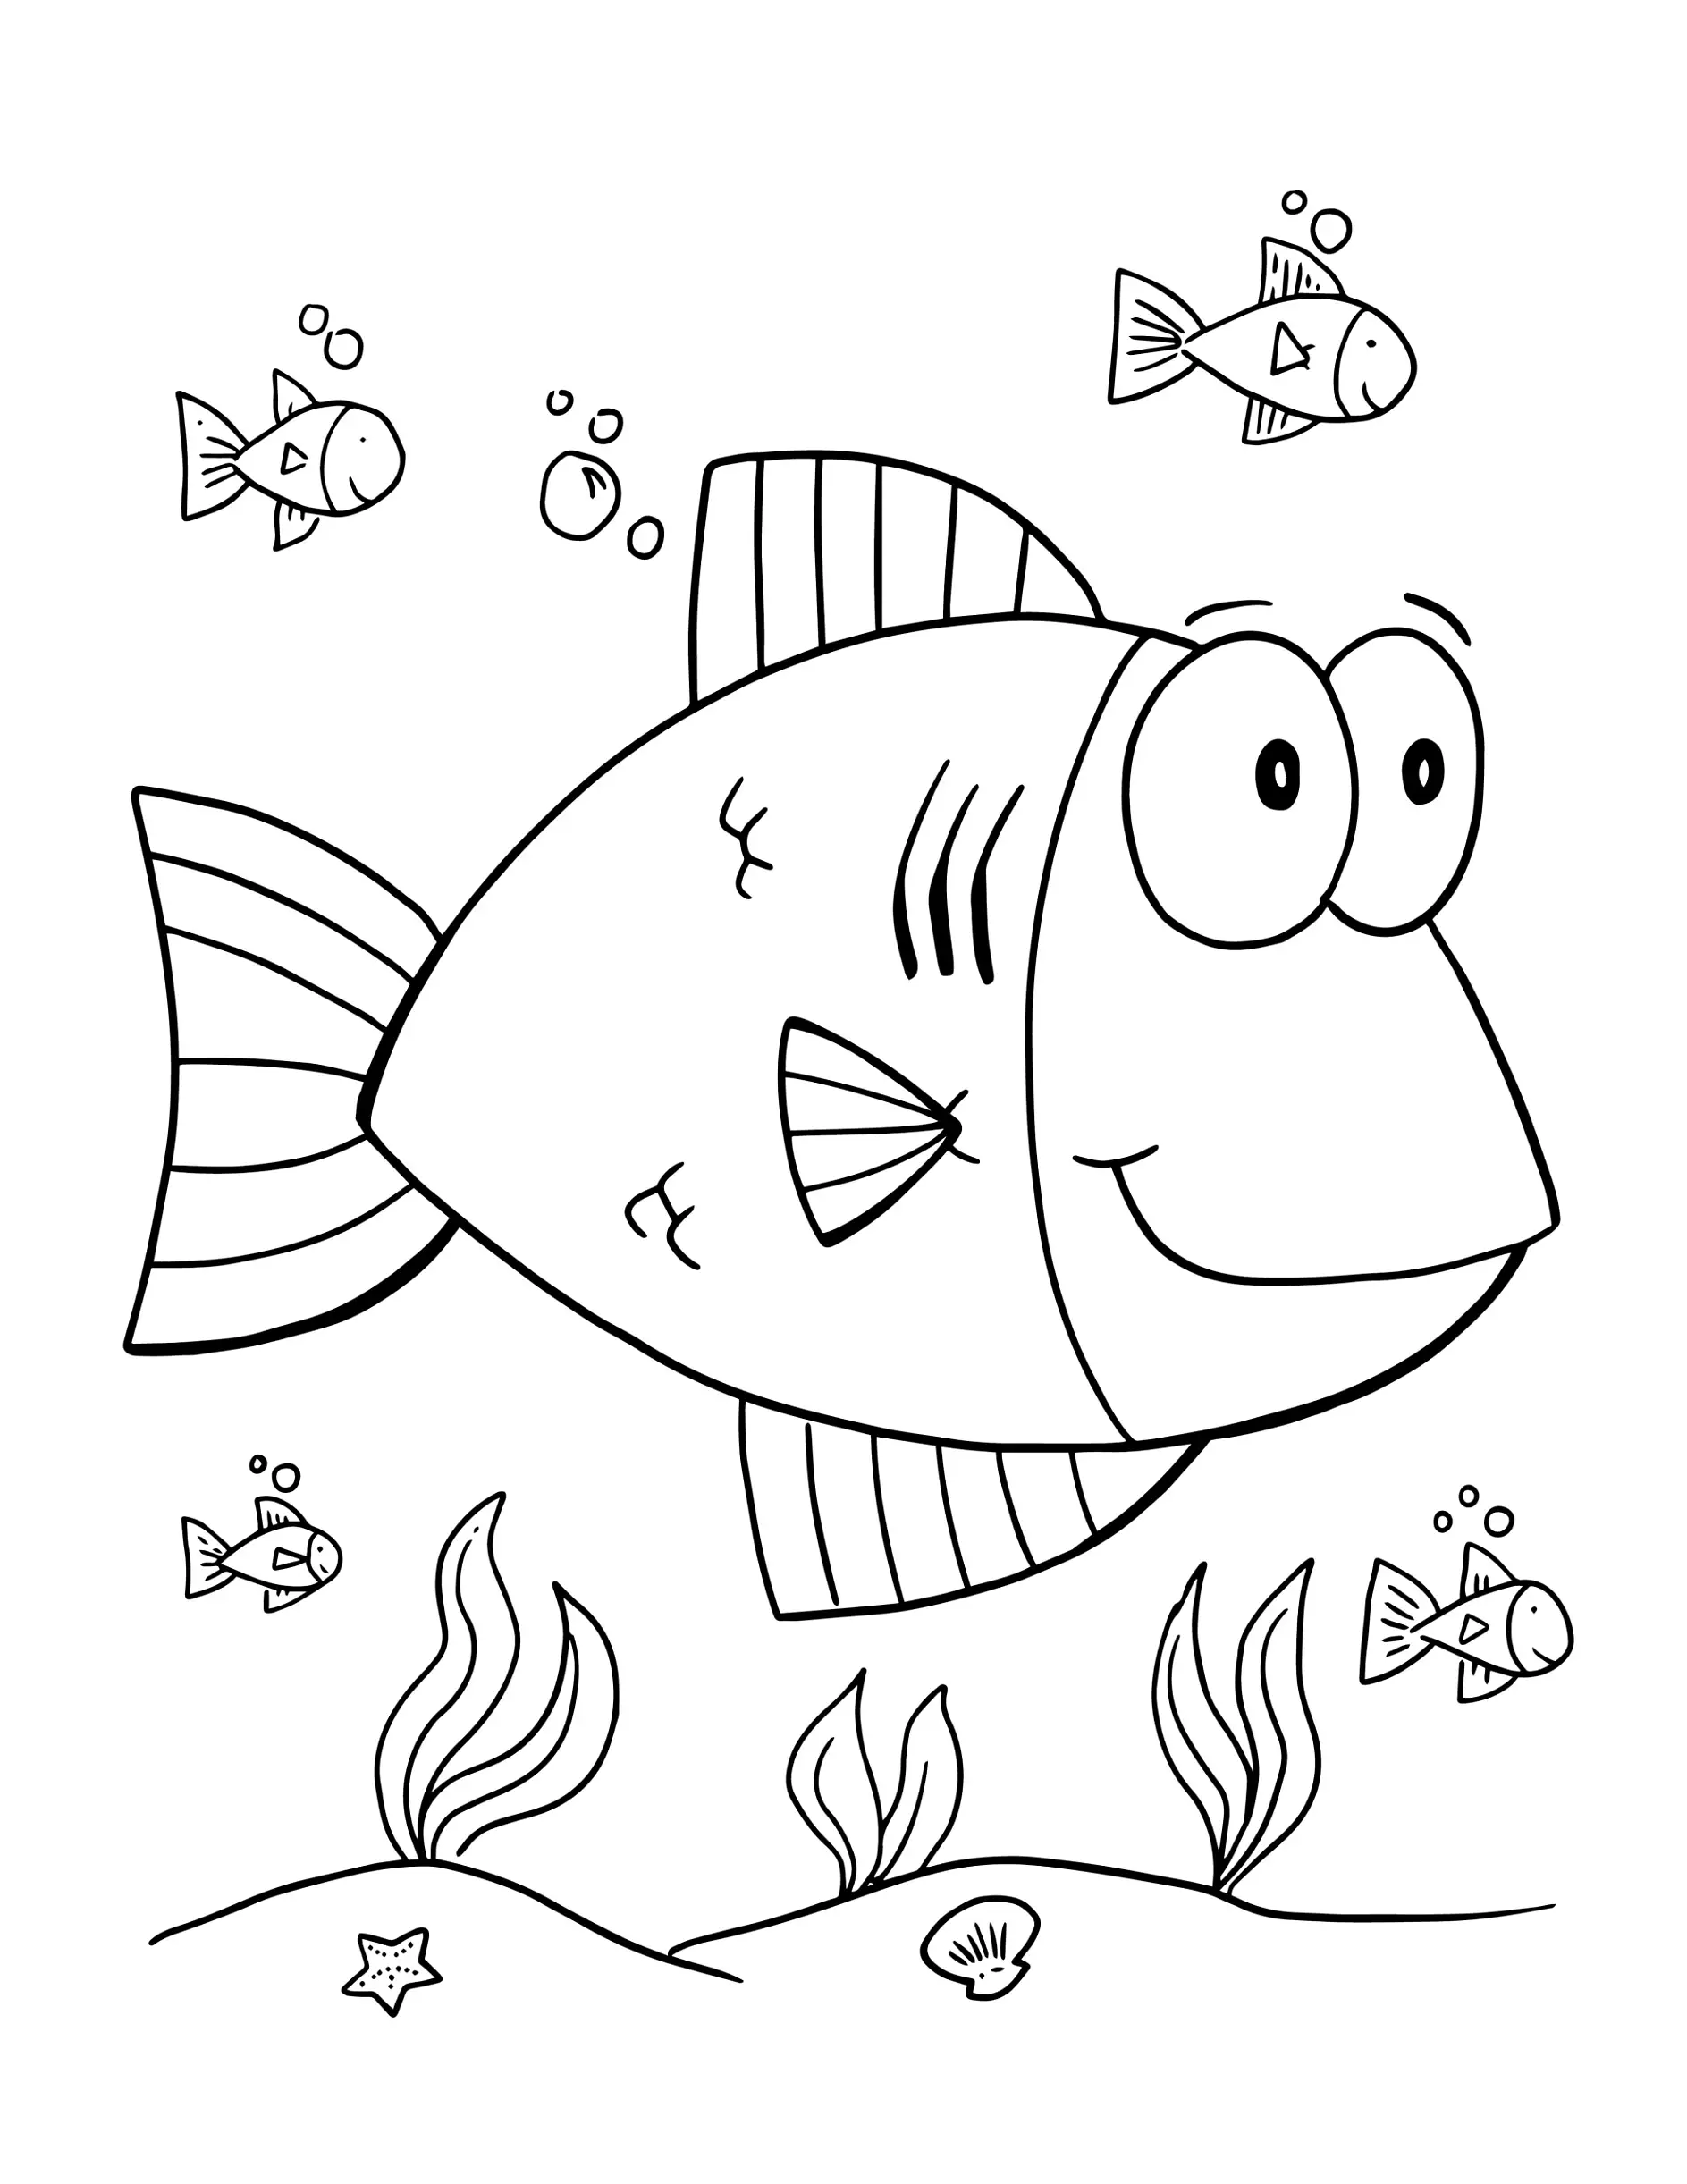 Ausmalbild Fisch mit großen Augen, umgeben von kleinen Fischen und Seepflanzen